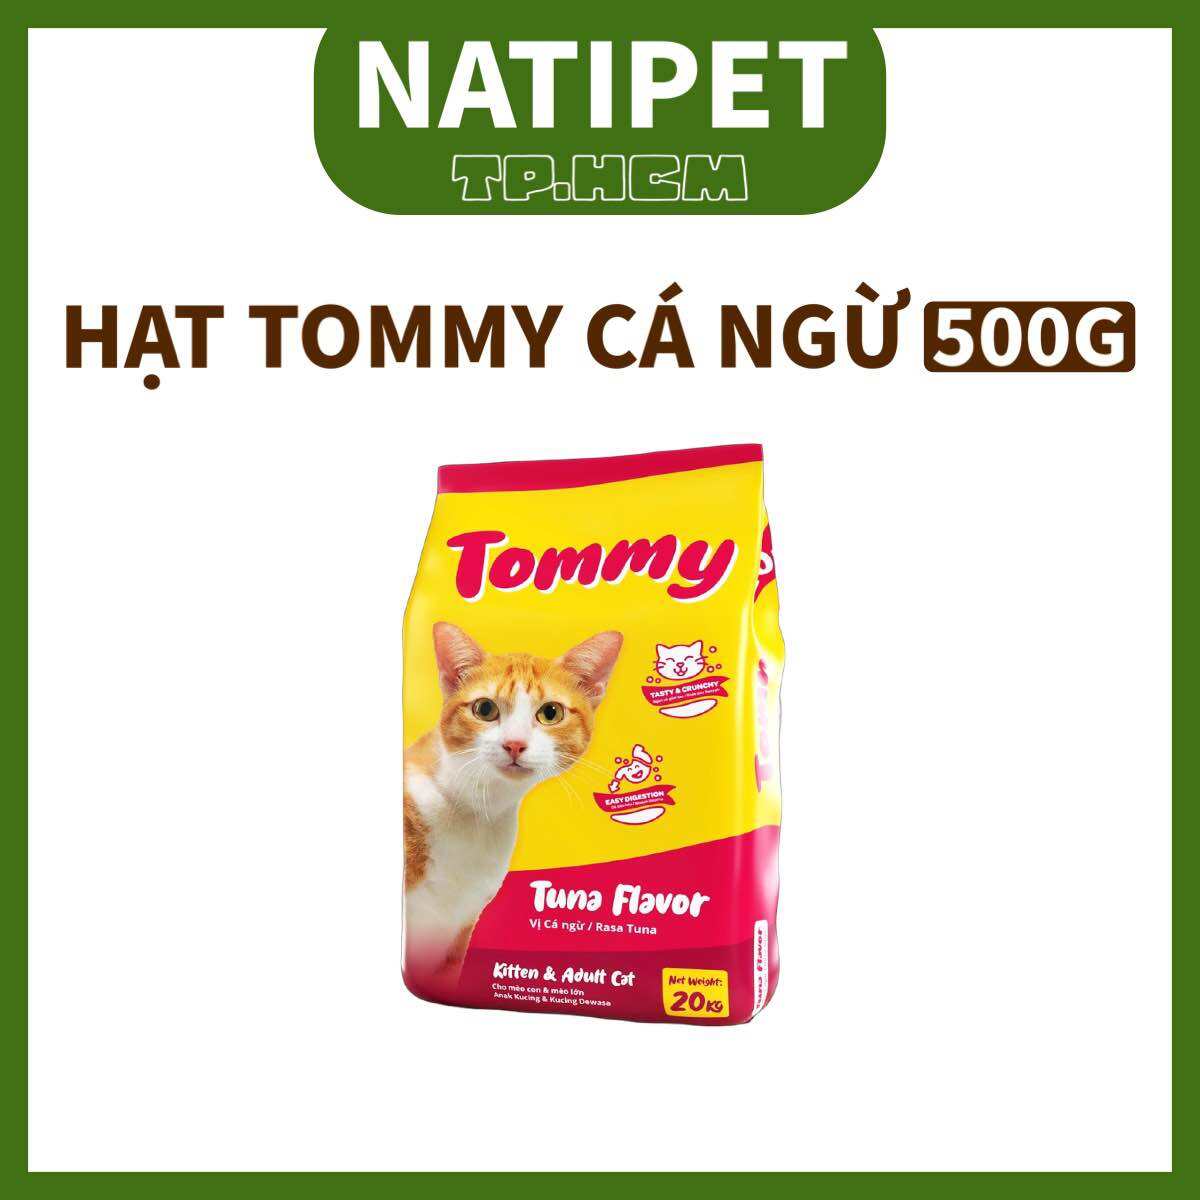 5 GÓI Hạt Tommy Gói 500g Vị Cá Ngừ, Thức ăn cho mèo mọi lứa tuổi